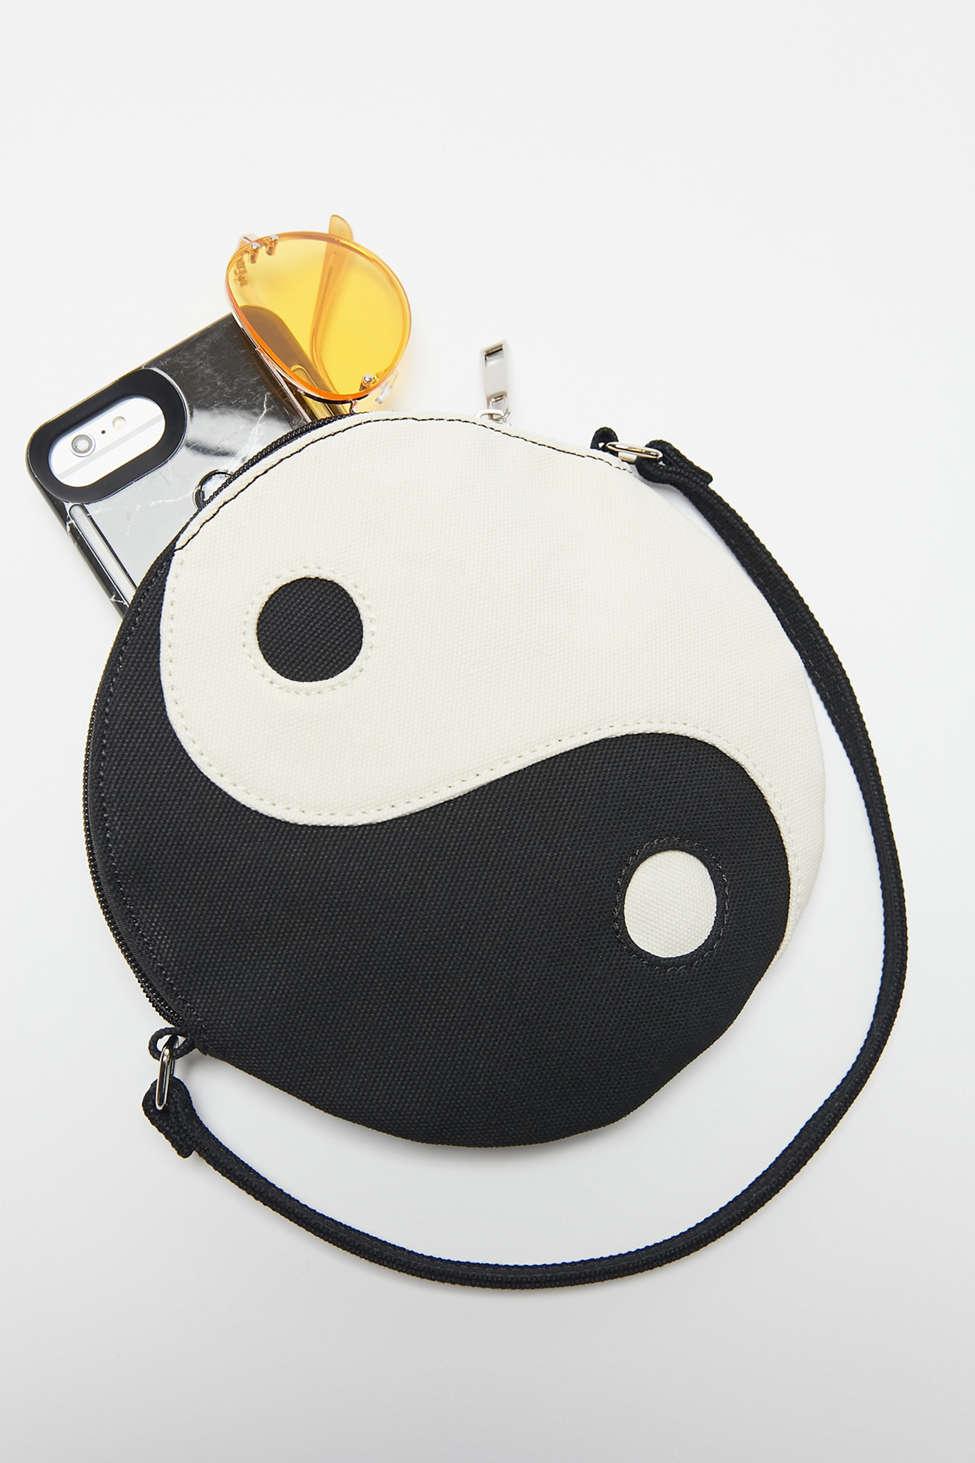 KEAKIA Yin Yang Concept Round Crossbody Bag Shoulder Sling Bag Handbag Purse Satchel Shoulder Bag for Kids Women